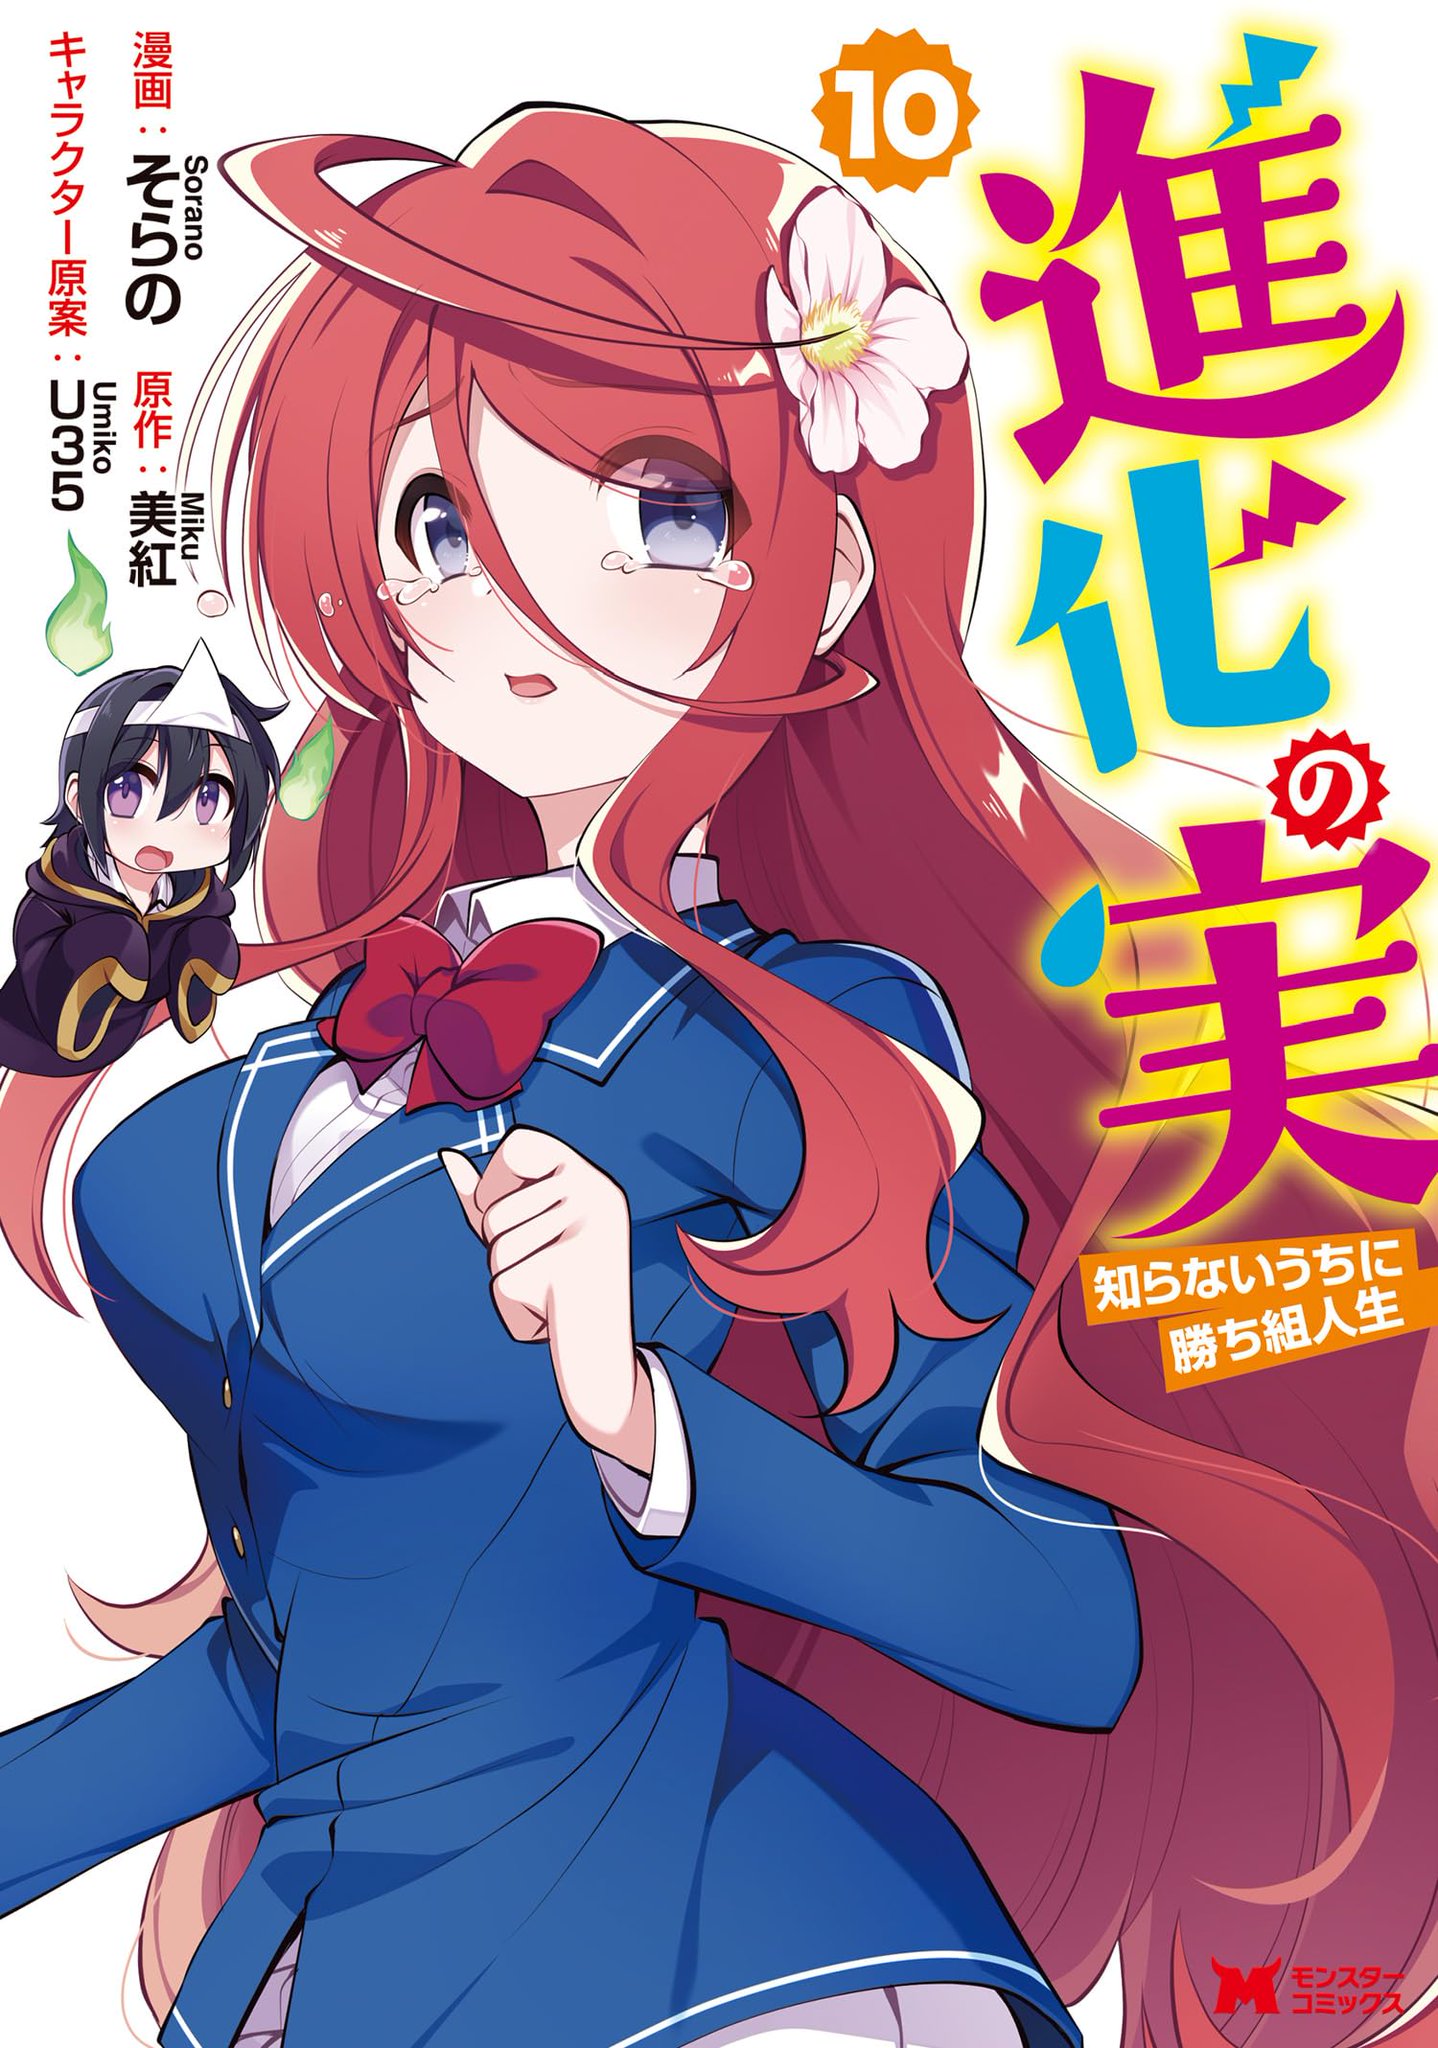 Read Shinka no Mi by Miku Free On MangaKakalot - Chapter 38.1